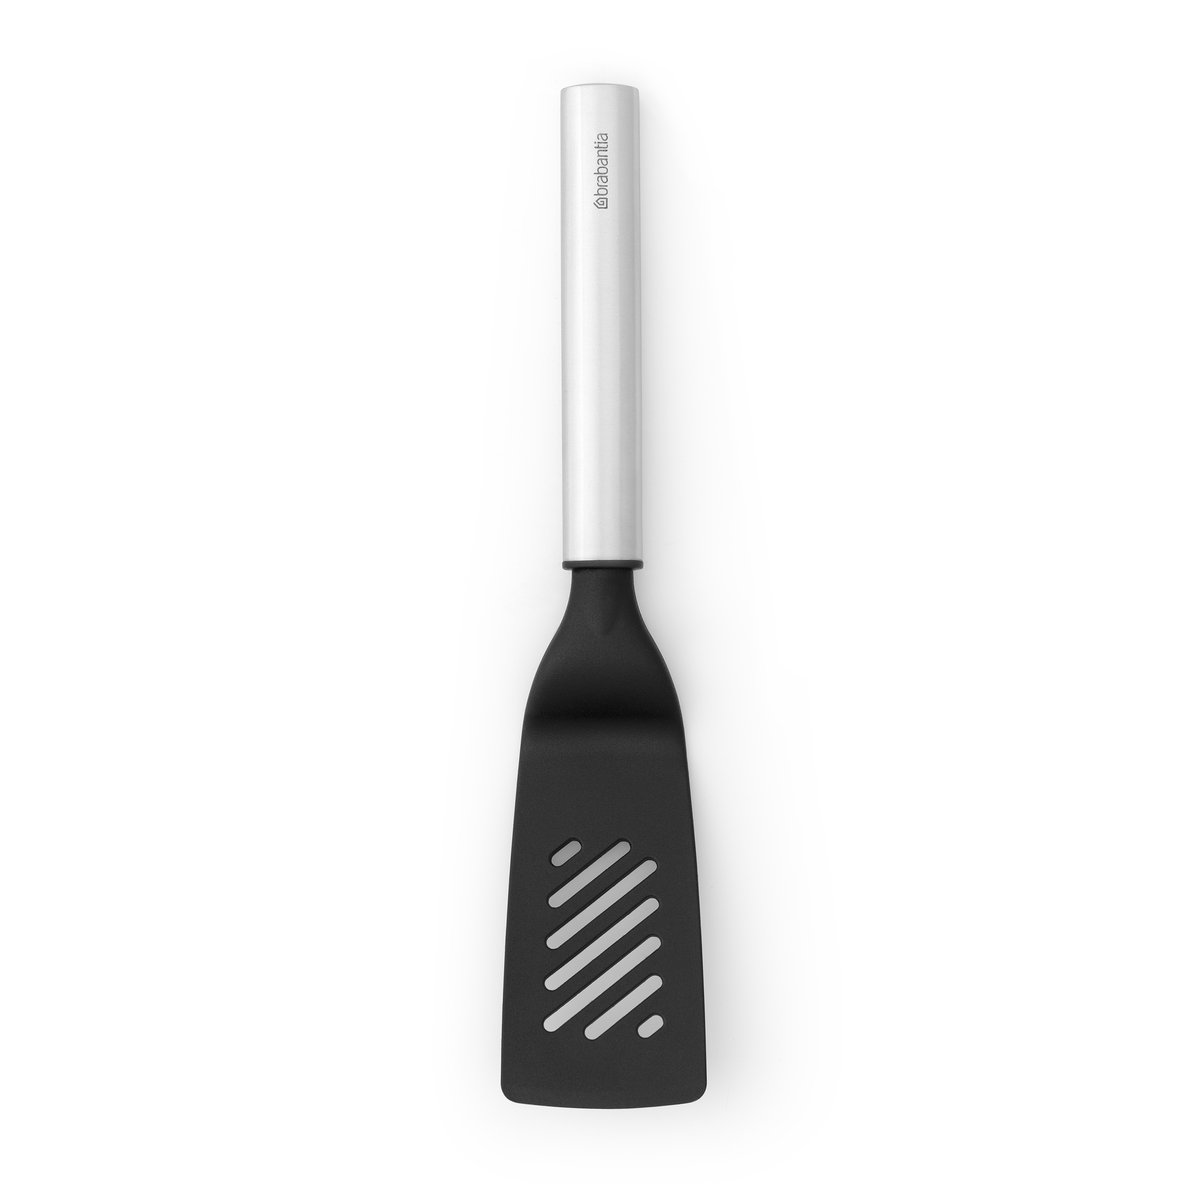 brabantia petite spatule anti-adhésive profile acier inoxydable